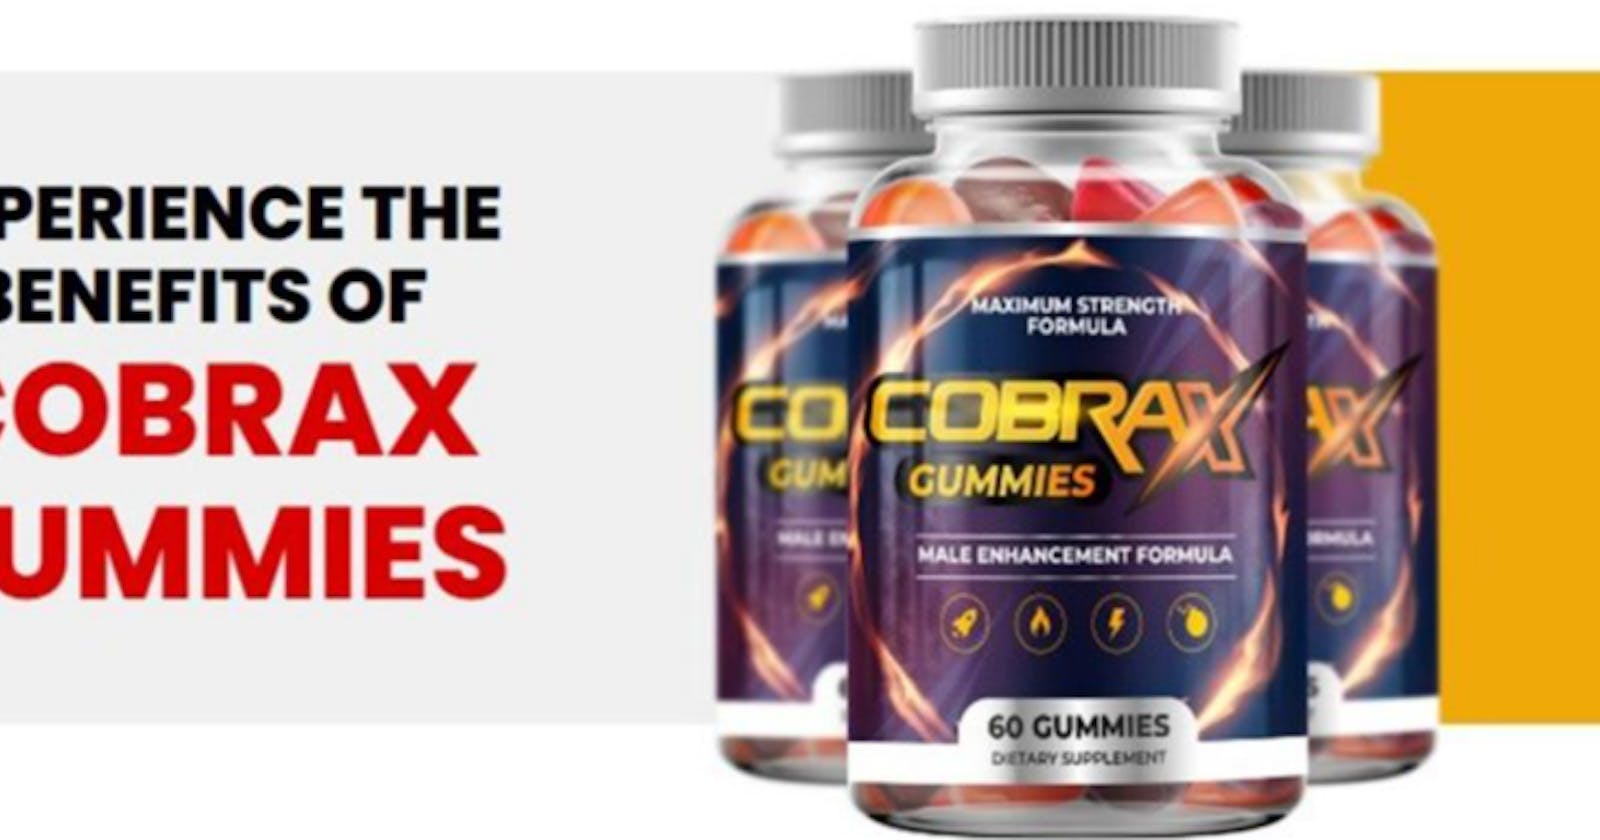 Cobra X Male Enhancement Gummies "World's Best" Libido Booster!